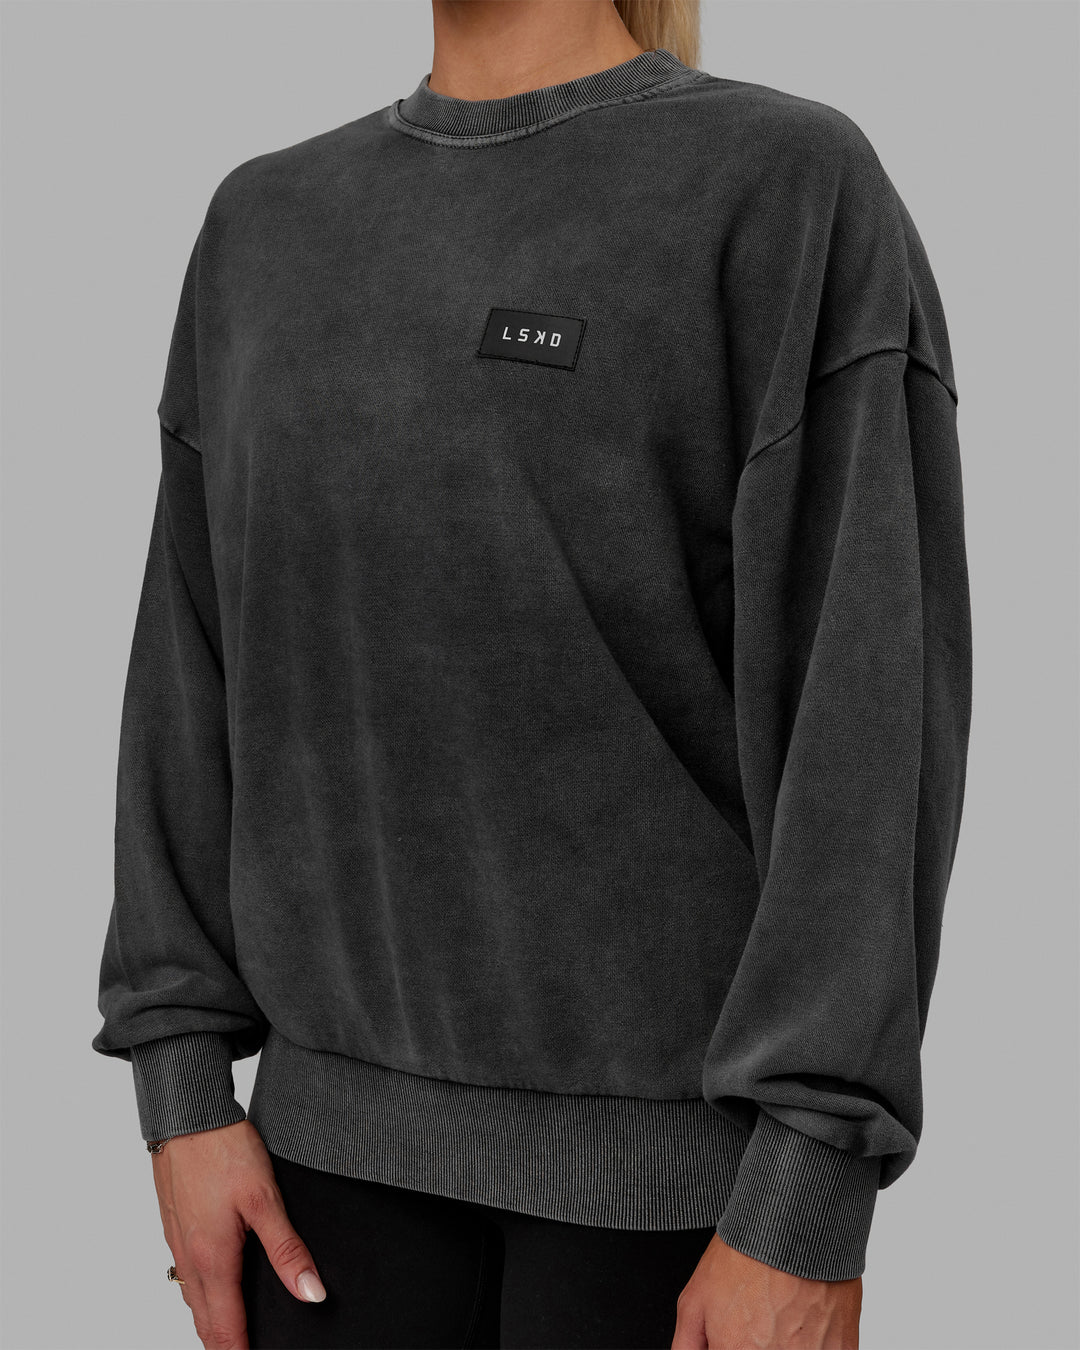 Woman wearing Unisex Washed Segmented Oversized Sweater - Black